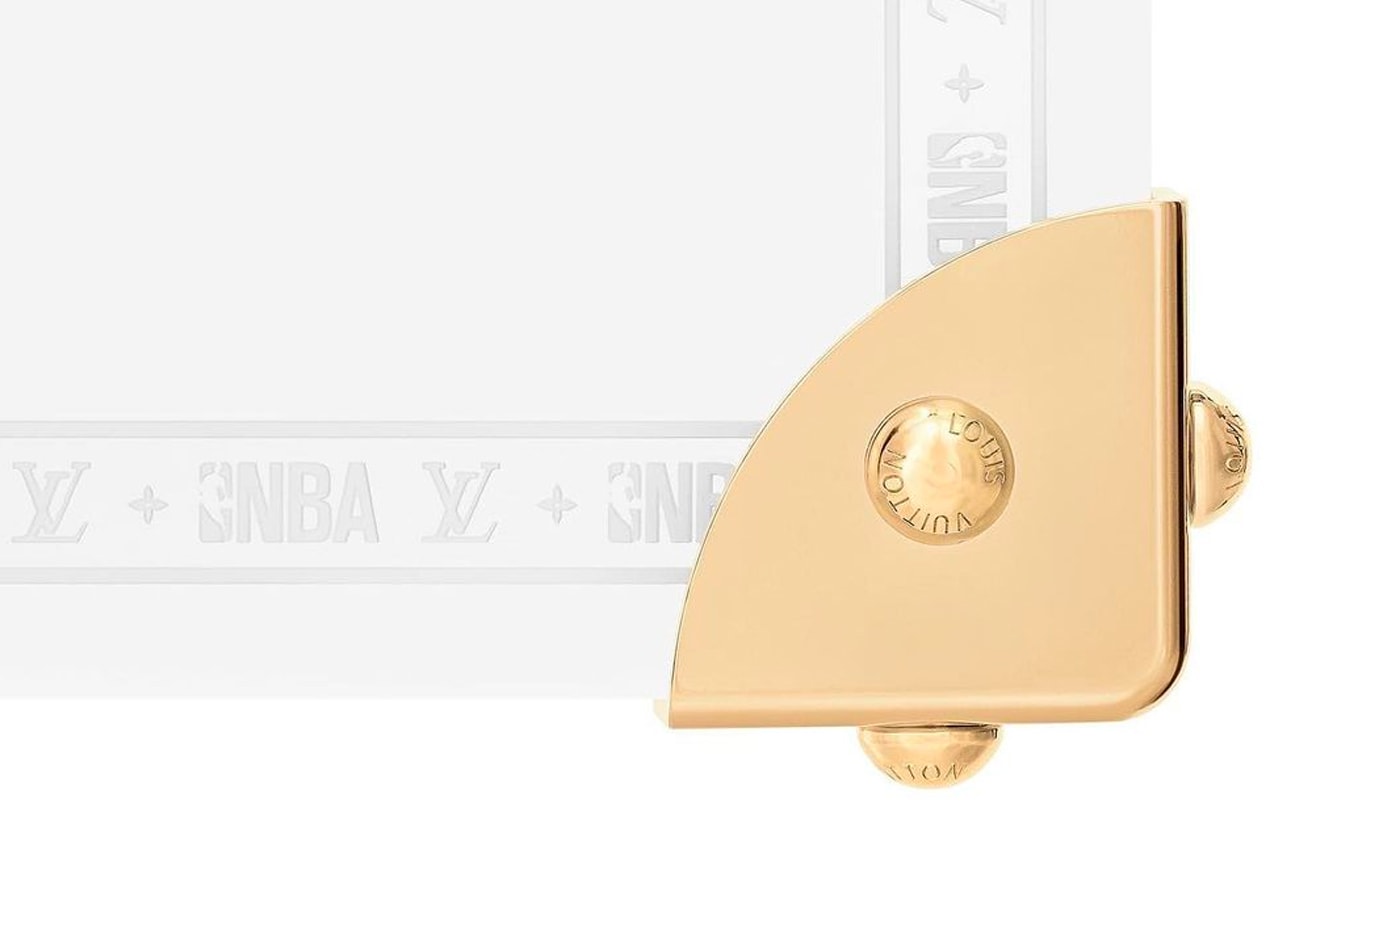 ルイ・ヴィトン バスケットゴールとボールのパックを発売 NBA Louis Vuitton Backboard Ball Virgil Abloh Release Info Buy Price 